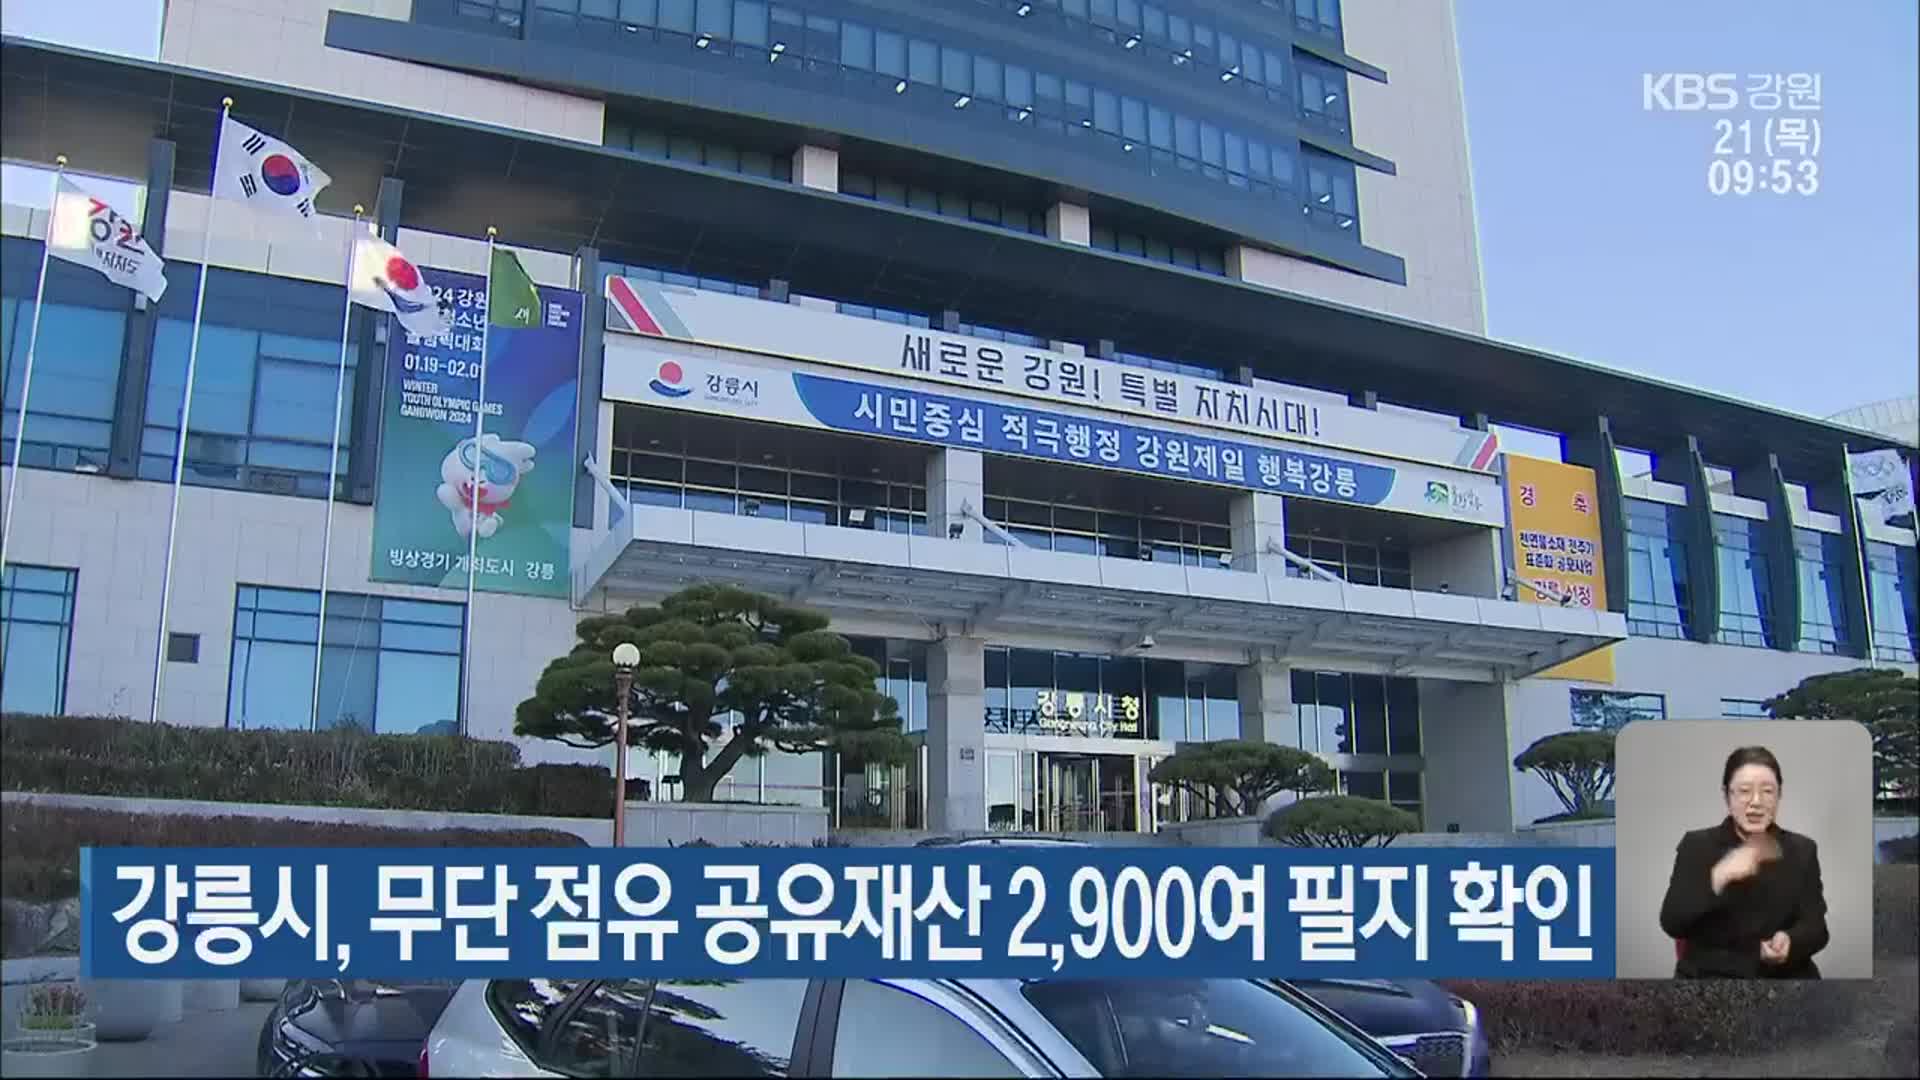 강릉시, 무단 점유 공유재산 2,900여 필지 확인